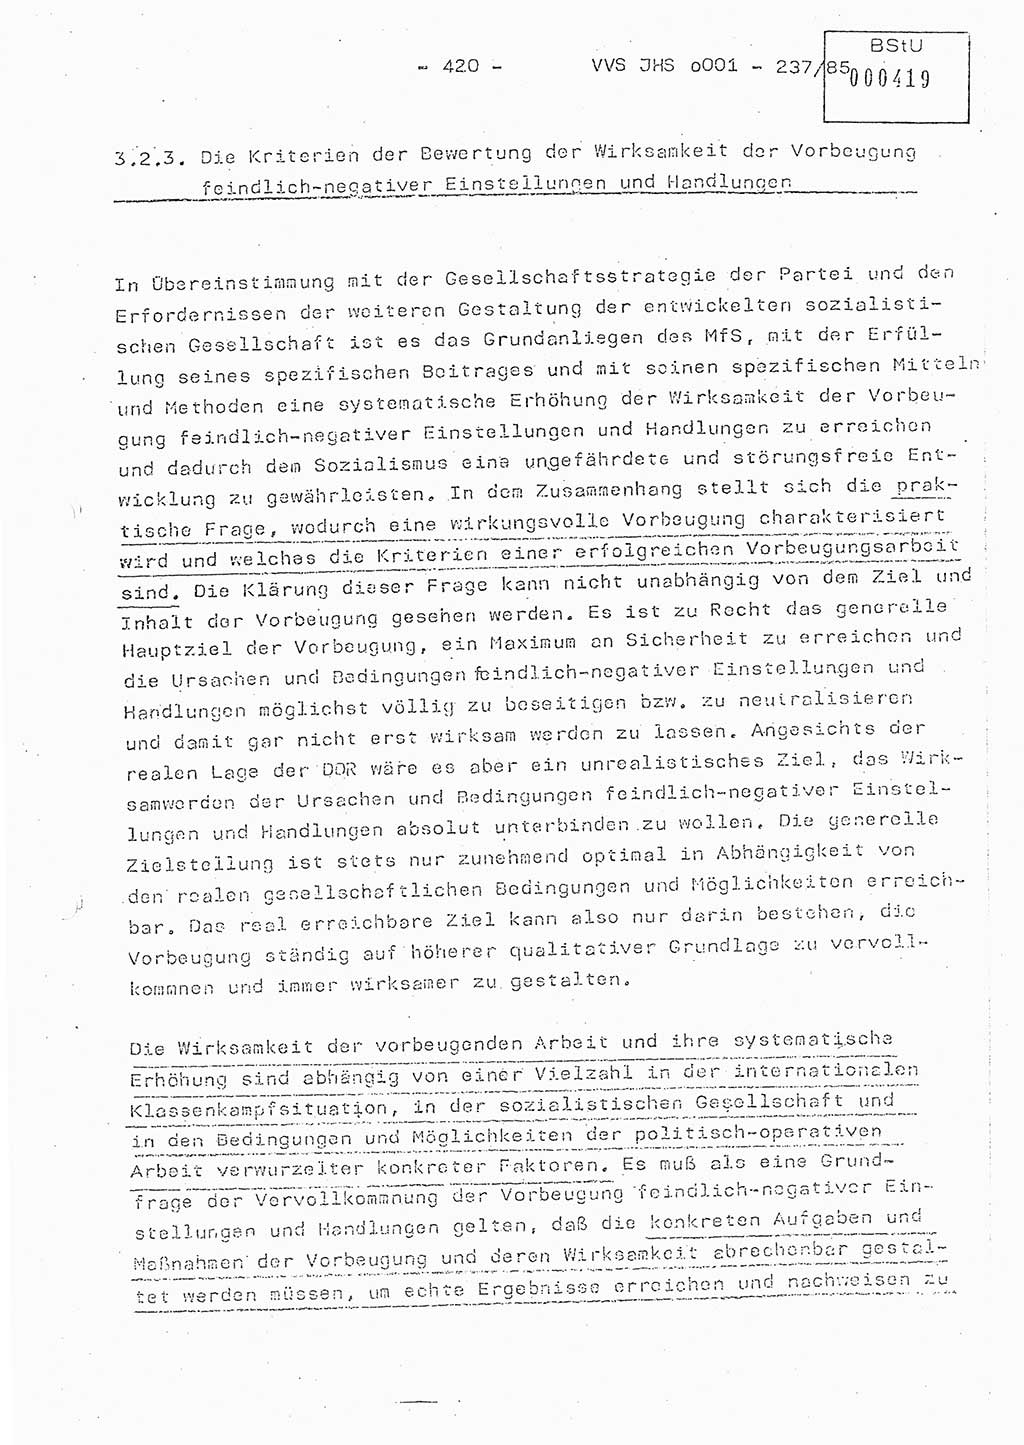 Dissertation Oberstleutnant Peter Jakulski (JHS), Oberstleutnat Christian Rudolph (HA Ⅸ), Major Horst Böttger (ZMD), Major Wolfgang Grüneberg (JHS), Major Albert Meutsch (JHS), Ministerium für Staatssicherheit (MfS) [Deutsche Demokratische Republik (DDR)], Juristische Hochschule (JHS), Vertrauliche Verschlußsache (VVS) o001-237/85, Potsdam 1985, Seite 420 (Diss. MfS DDR JHS VVS o001-237/85 1985, S. 420)